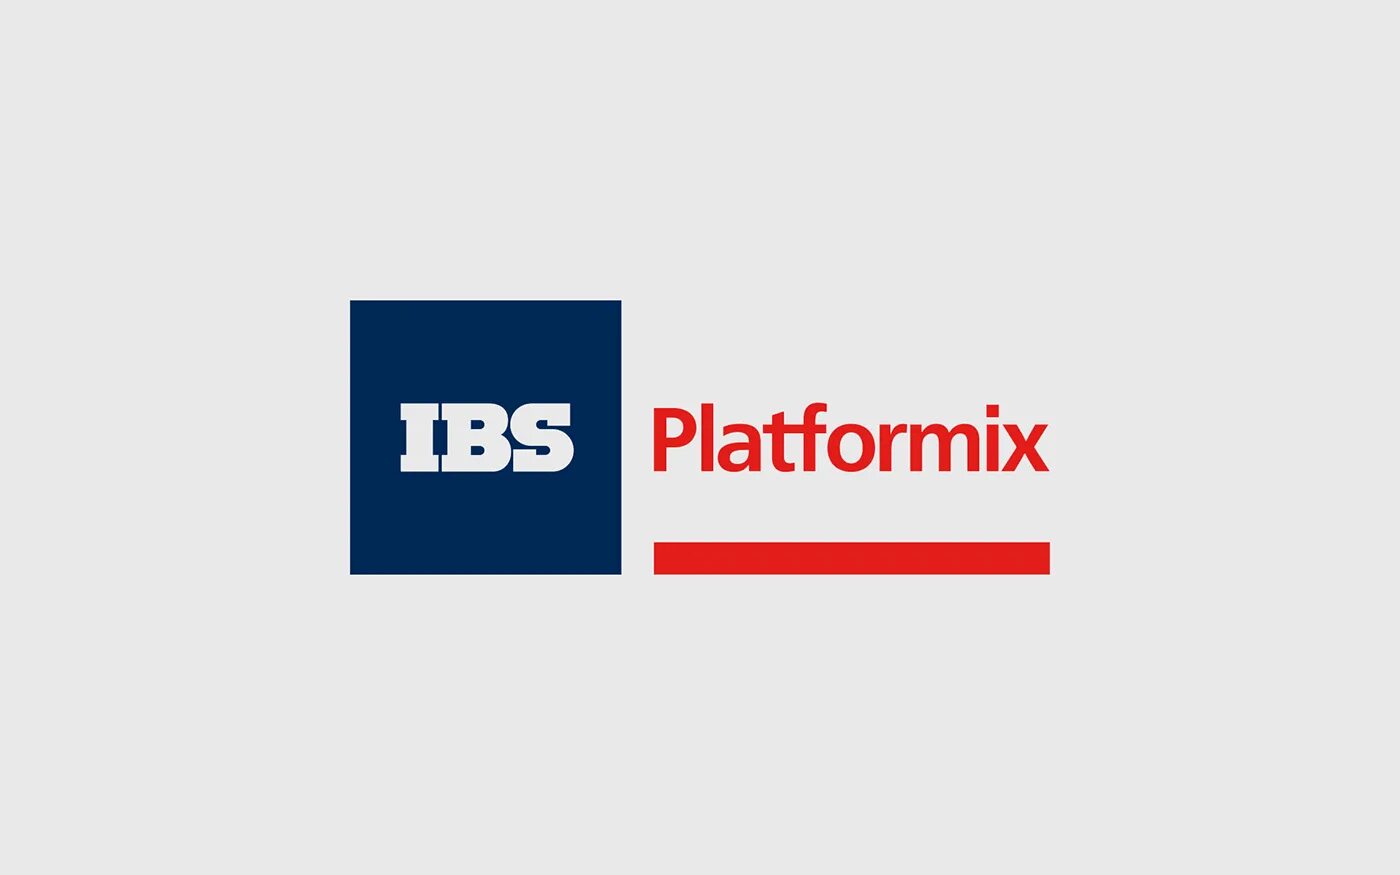 Ibs life. IBS логотип. IBS Platformix компания. Платформикс логотип. ИБС Платформикс.